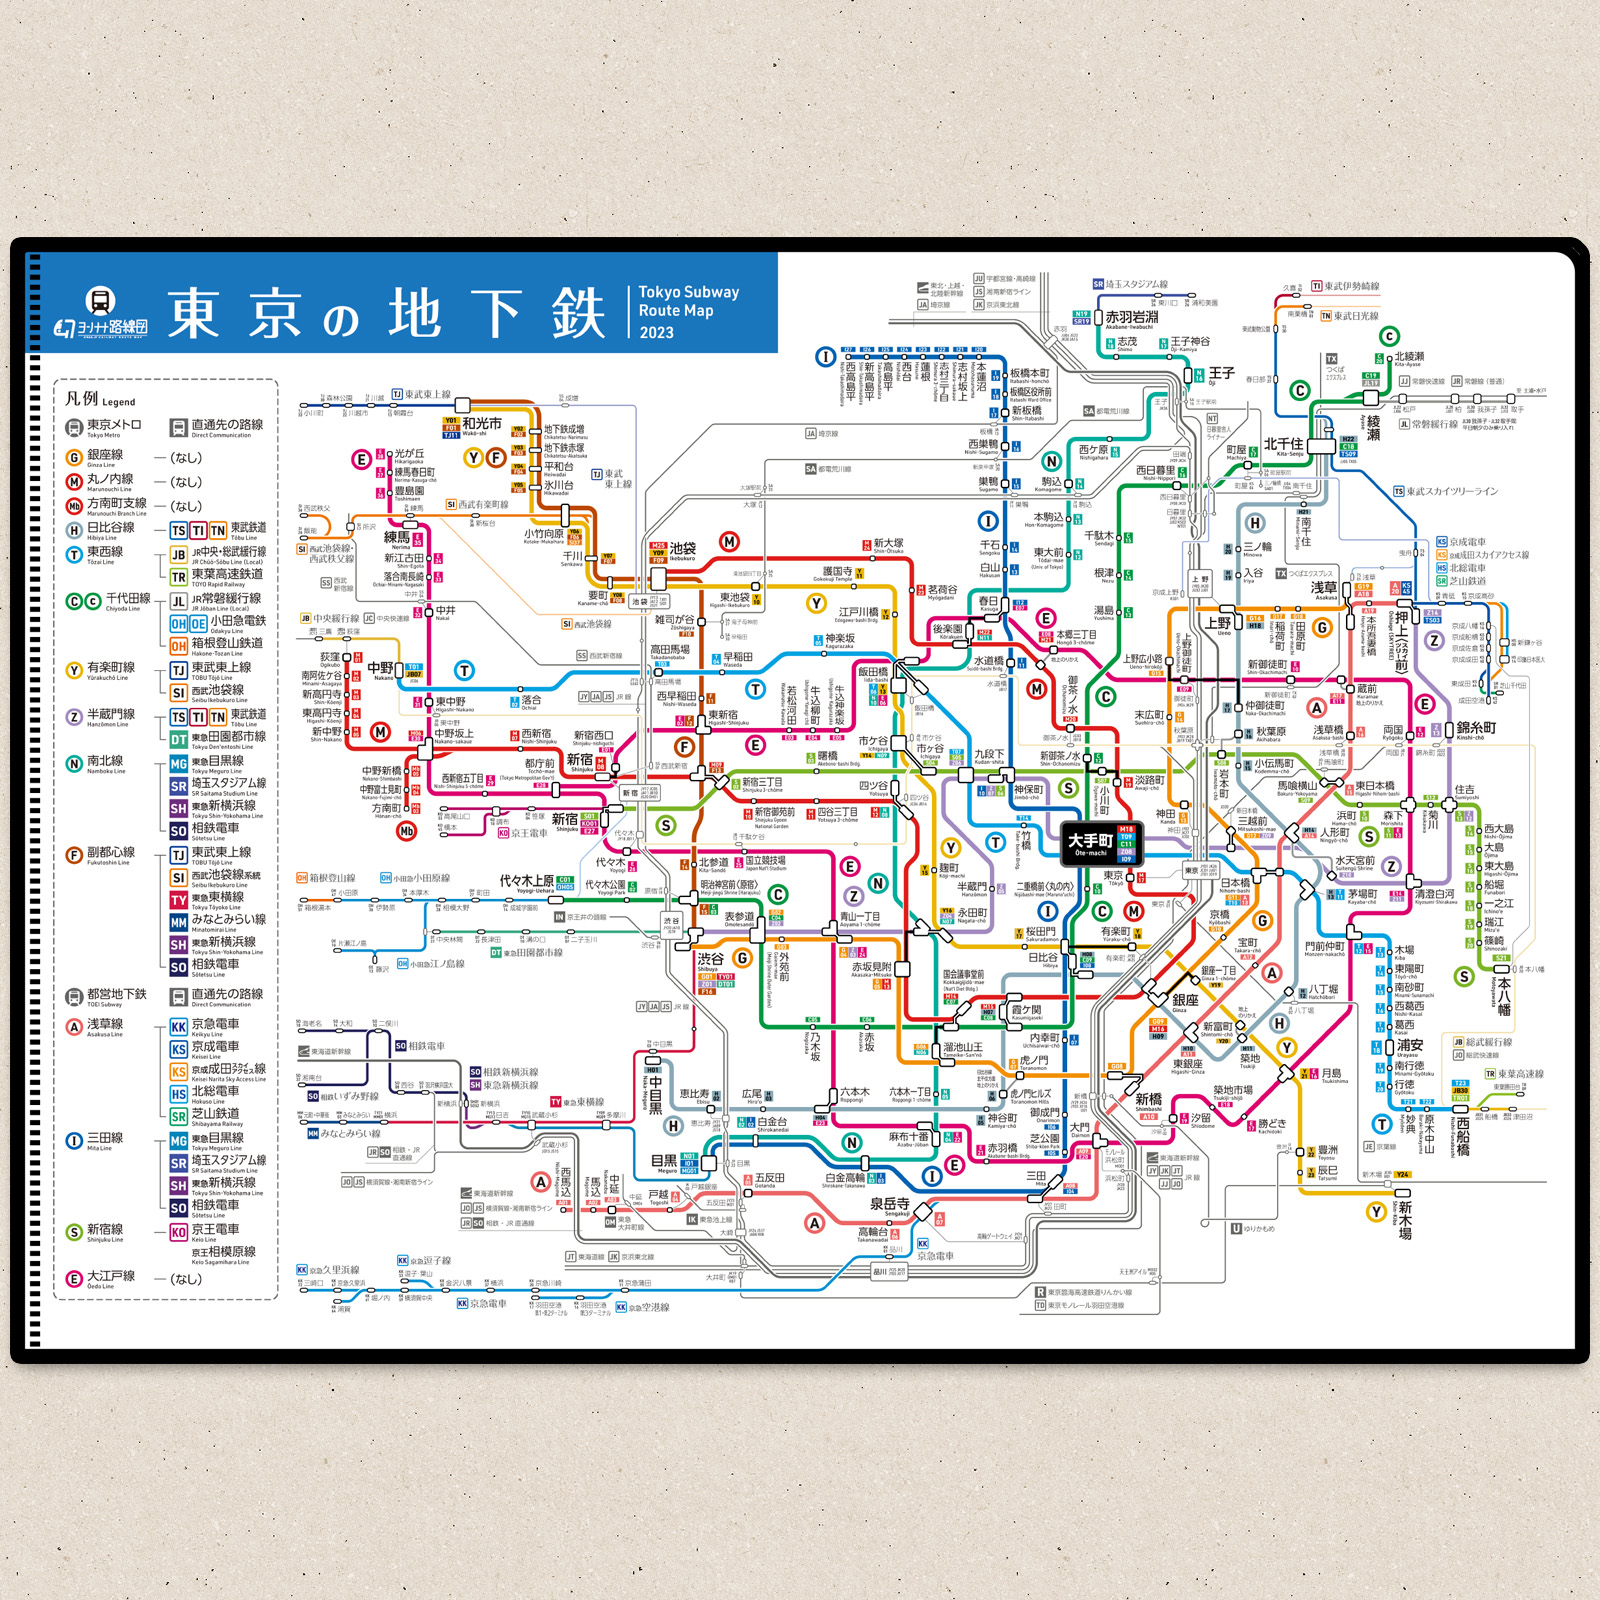 東京の地下鉄路線図クリアファイルのイメージ